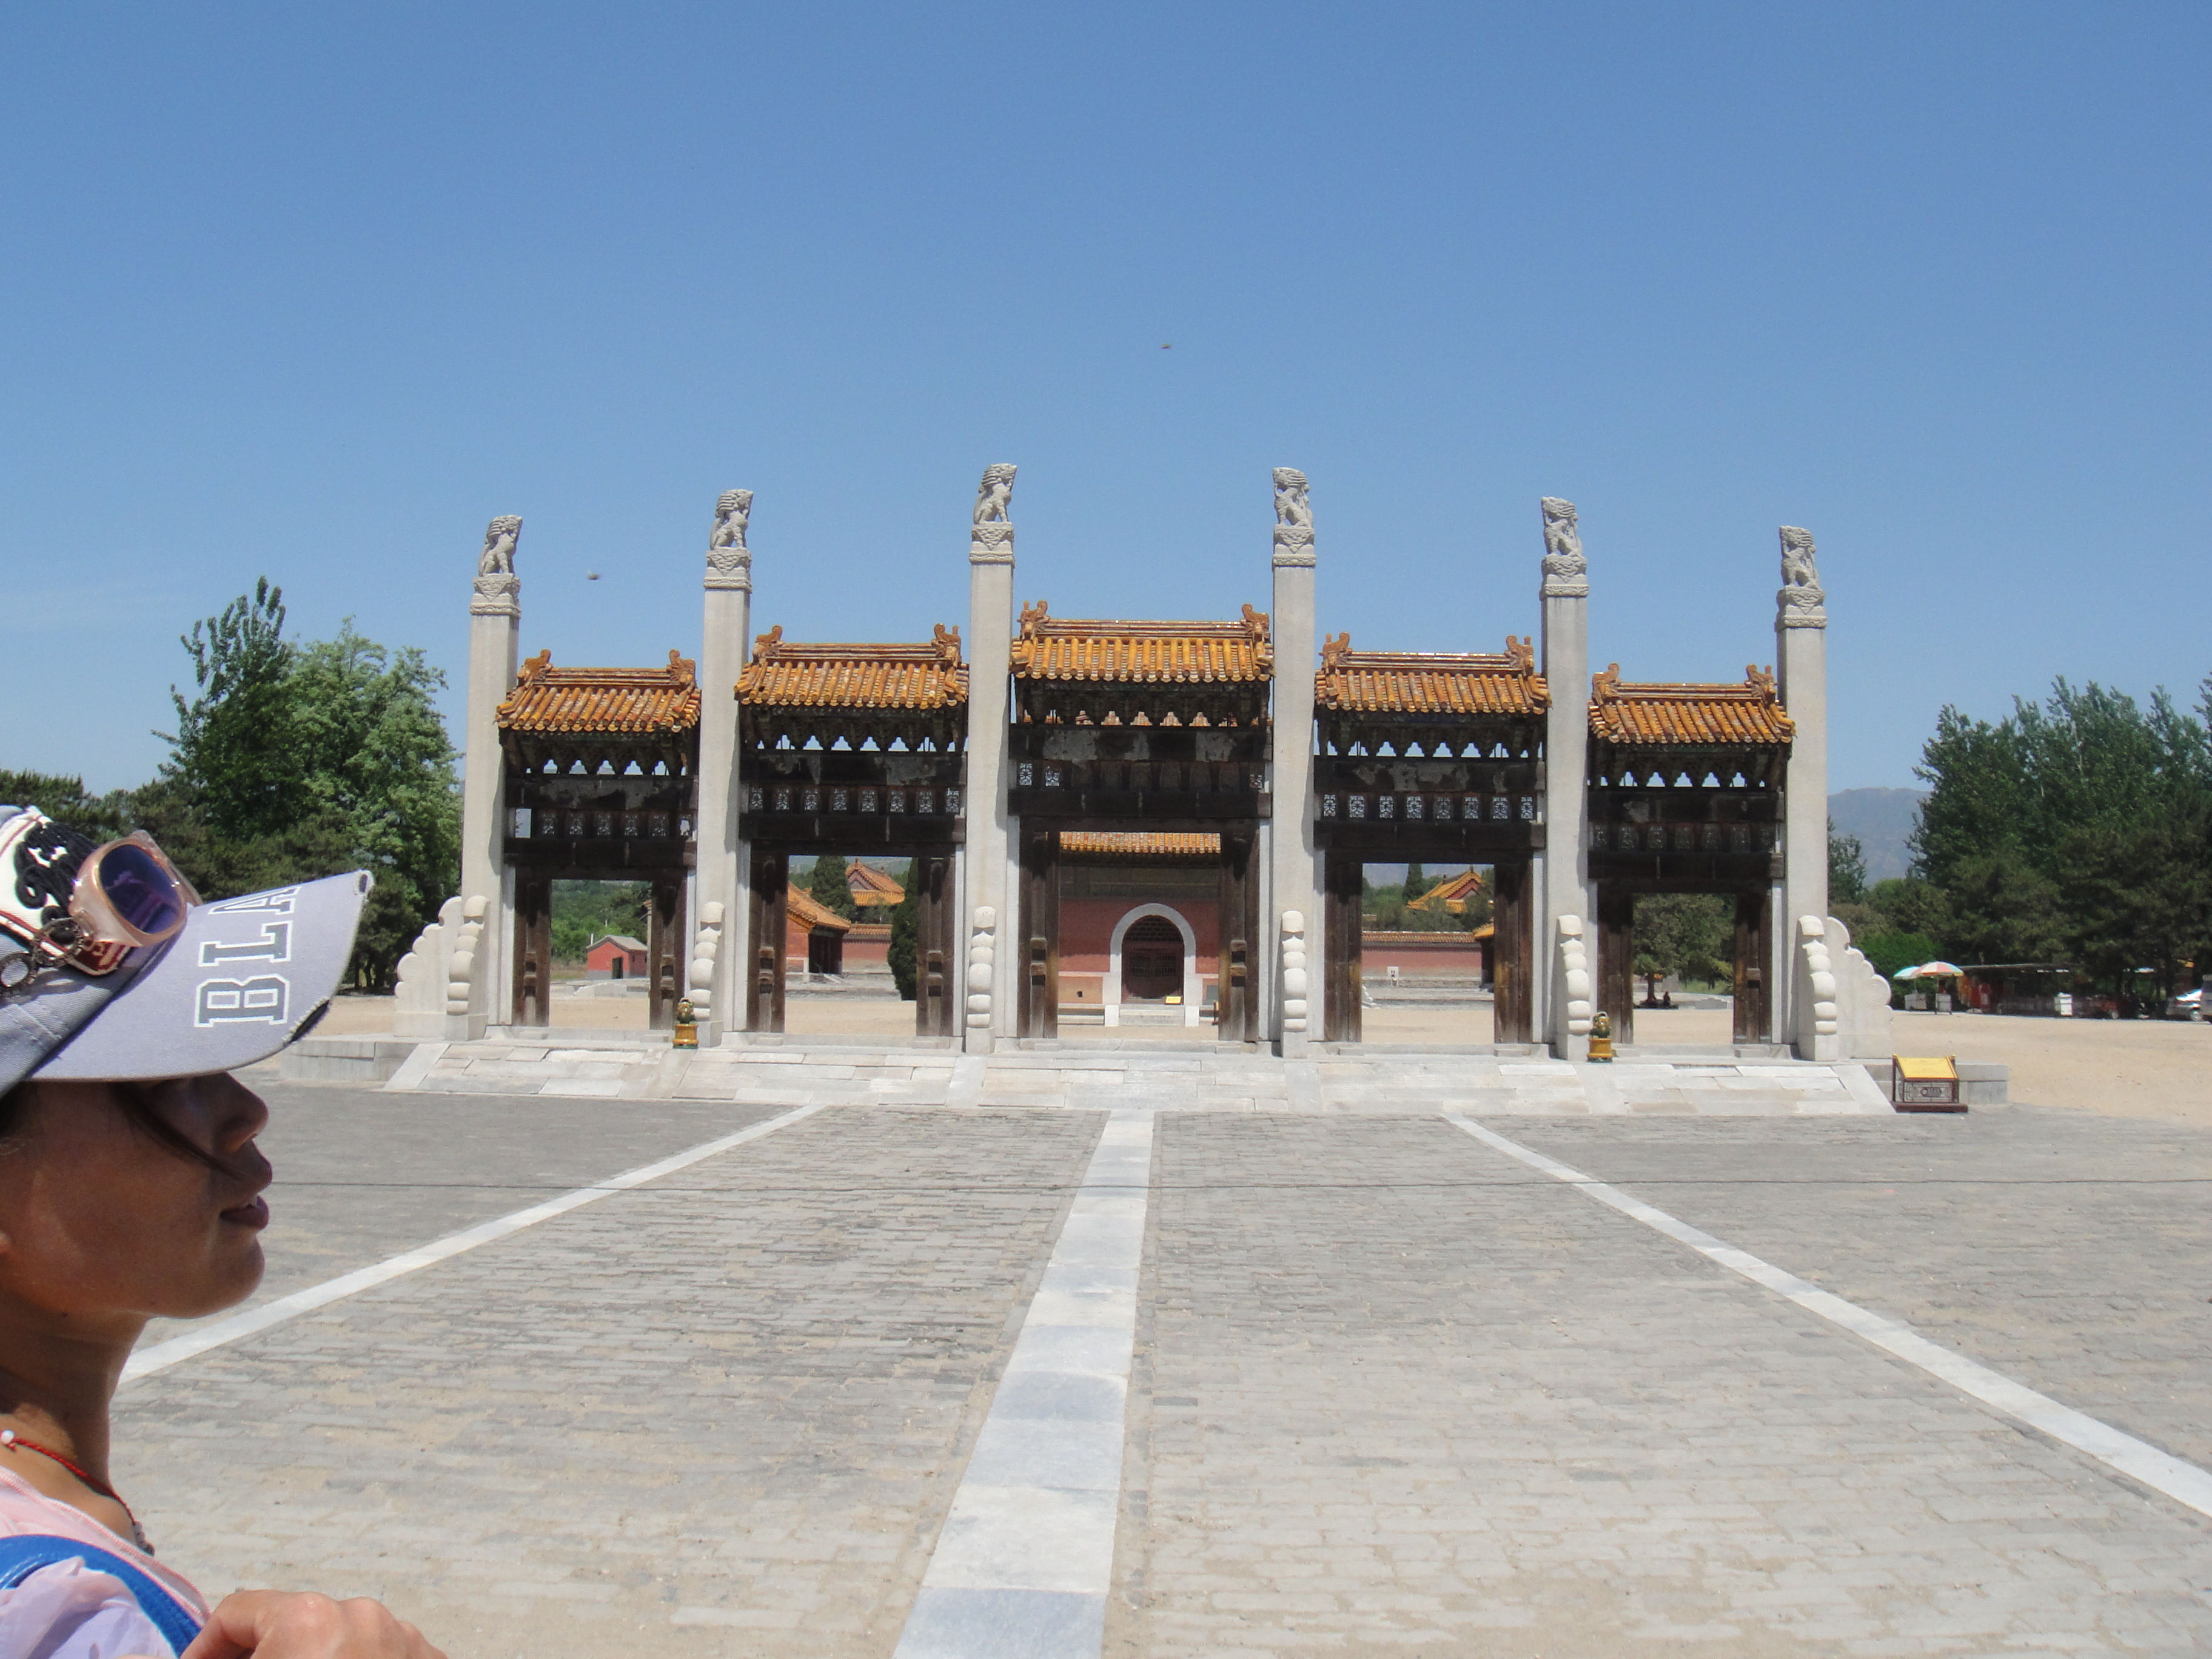 清西陵位于河北省易县，距北京约100公里。清西陵共有14座陵墓